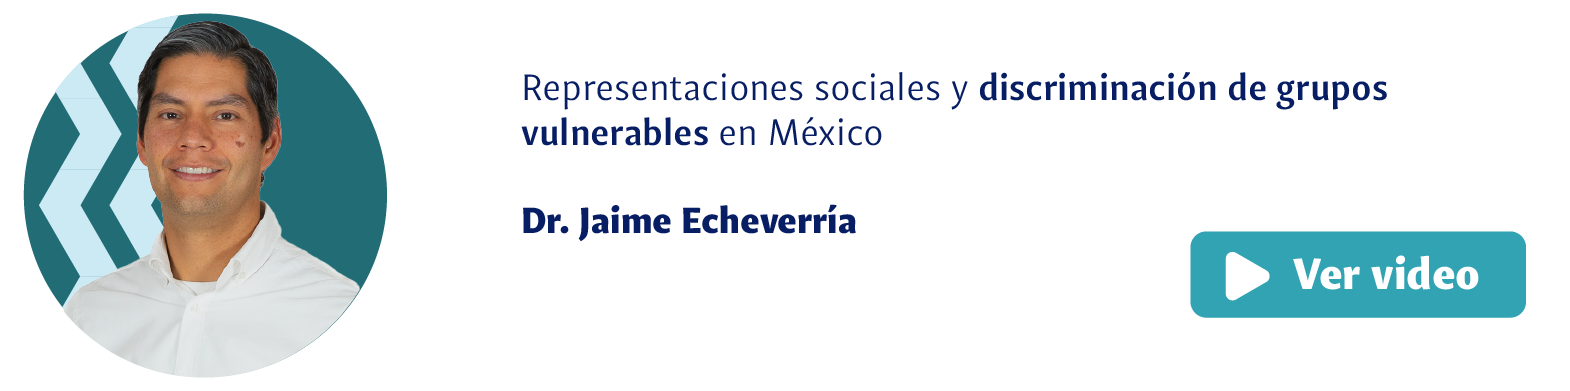 Dr. Jaime Echeverría, Representaciones sociales y discriminación de grupos vulnerables en México